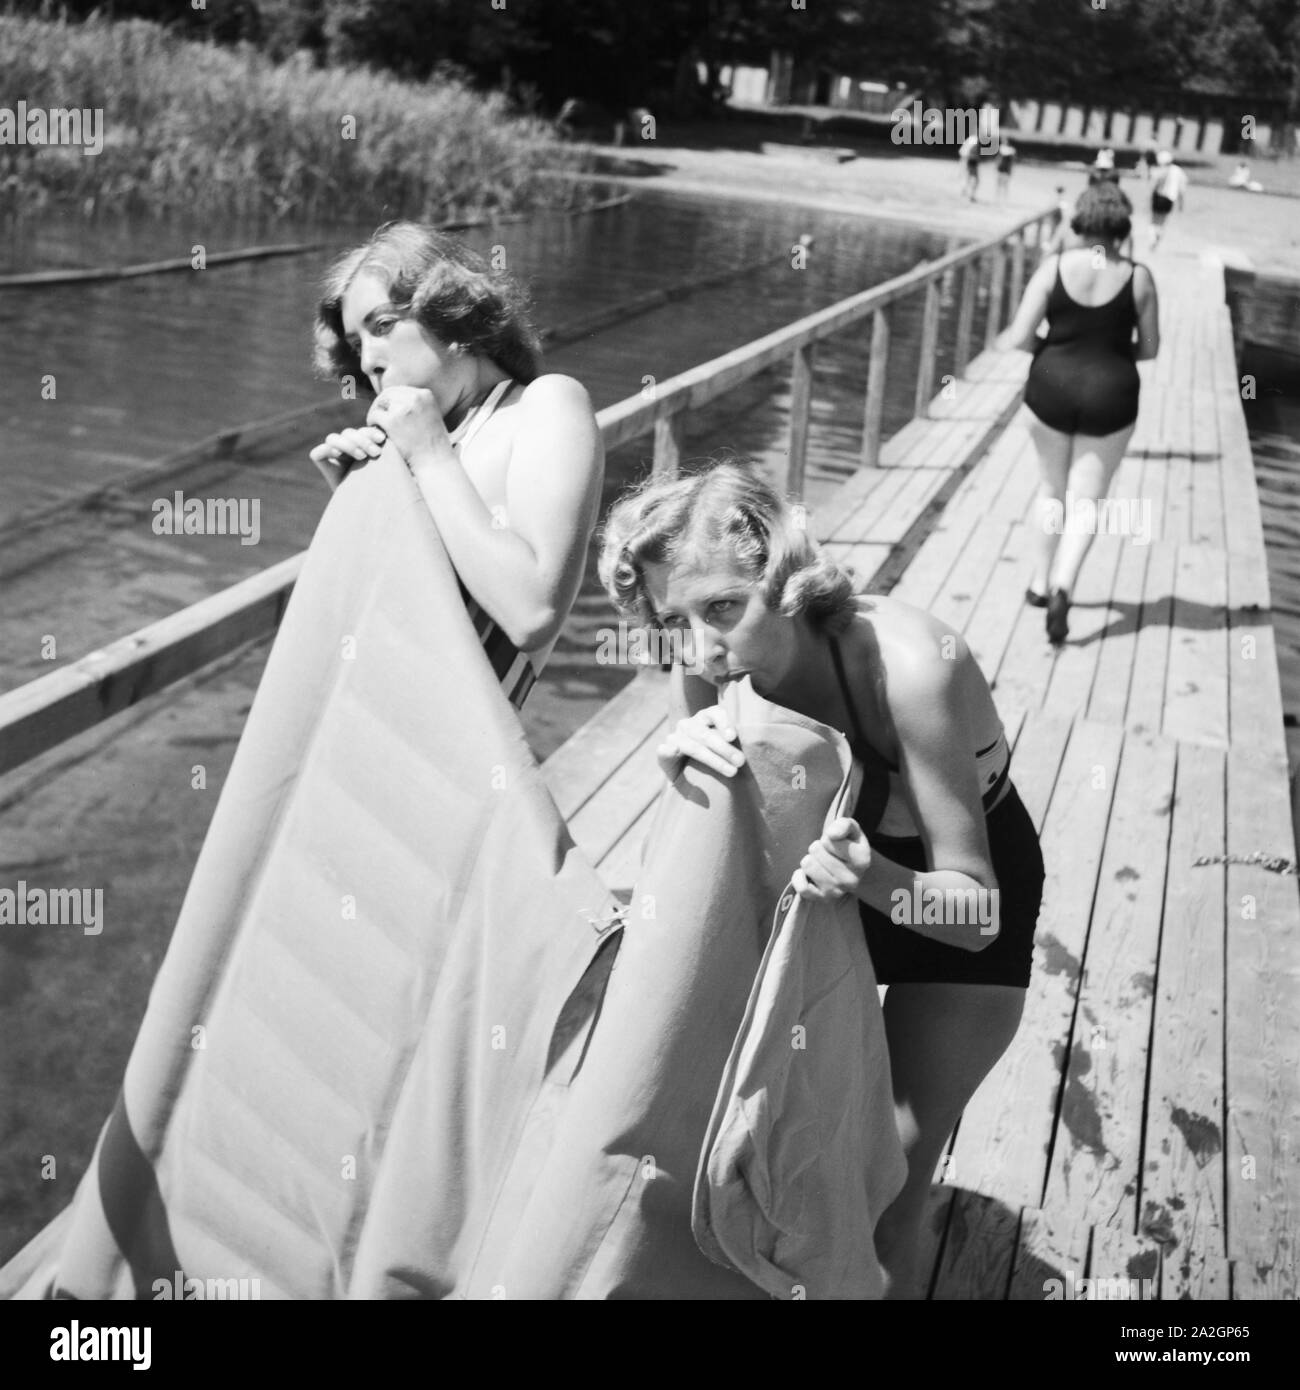 Zwei junge Frauen blasen ihre Luftmatratze un einem vedere in der Wachau in Österreich auf, Deutschland 1930er Jahre. Due giovani donne che soffia su loro materassi di aria su un lago in area di Wachau in Austria, Germania 1930s. Foto Stock